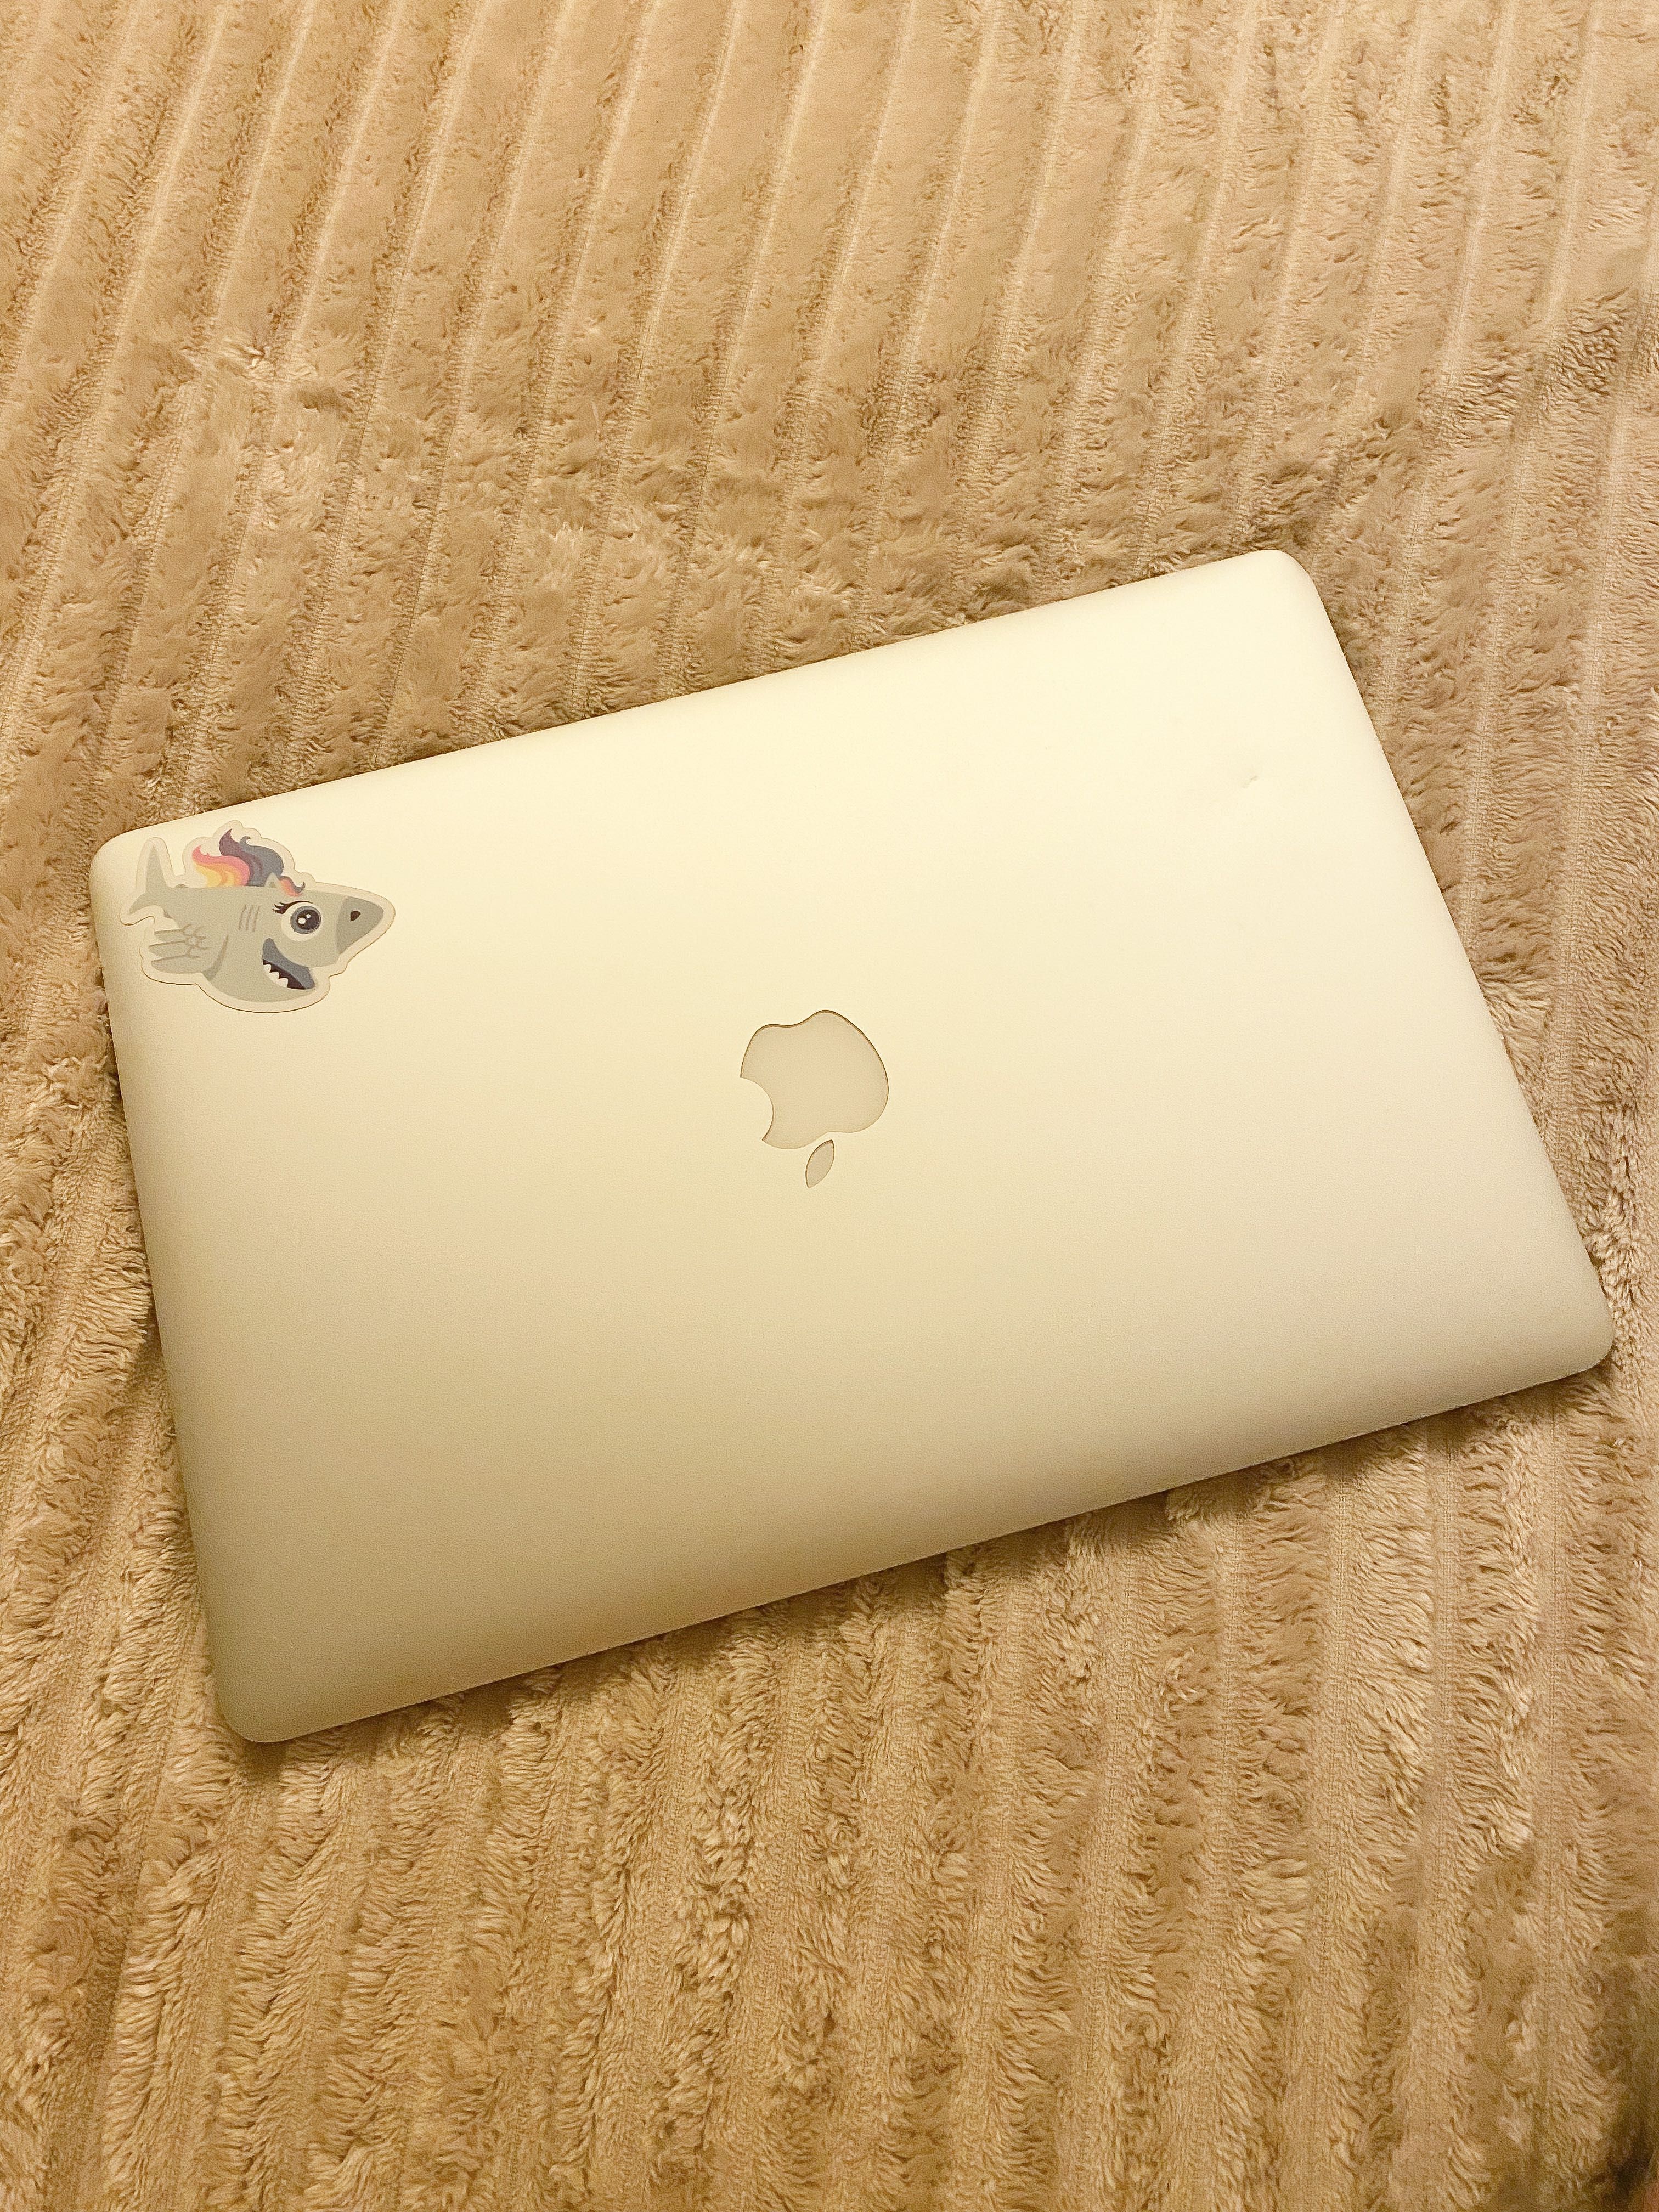 MacBook Pro Retina, 15-inch, Mid 2015, 512GB SSD, 16GB RAM